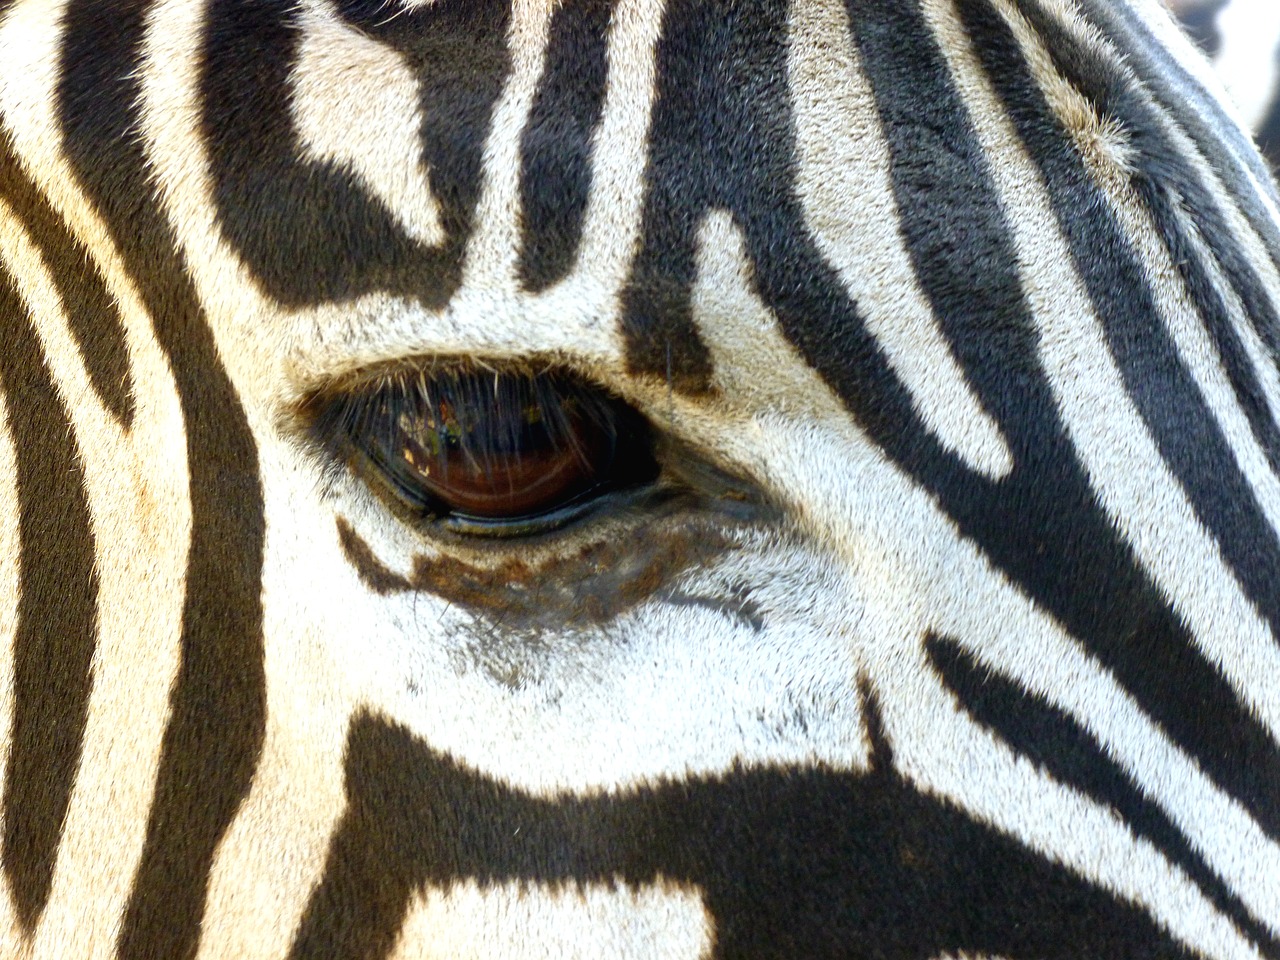 Image - zebra head eye black and white